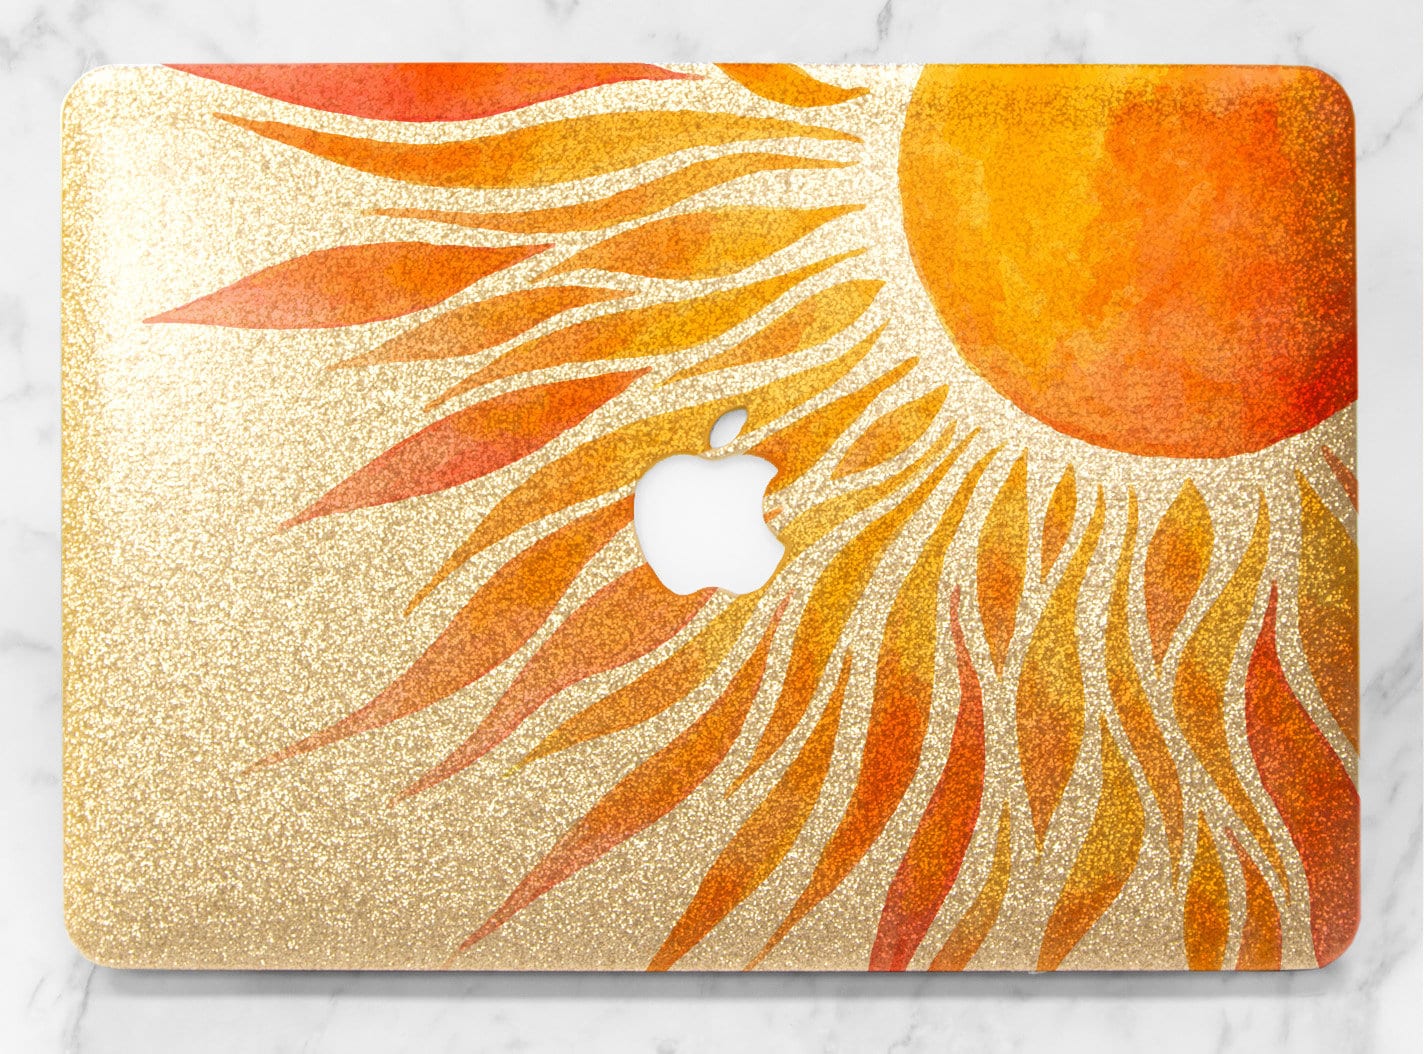 Golden Leaf Nature Pattern Floral Design MacBook Air 13 